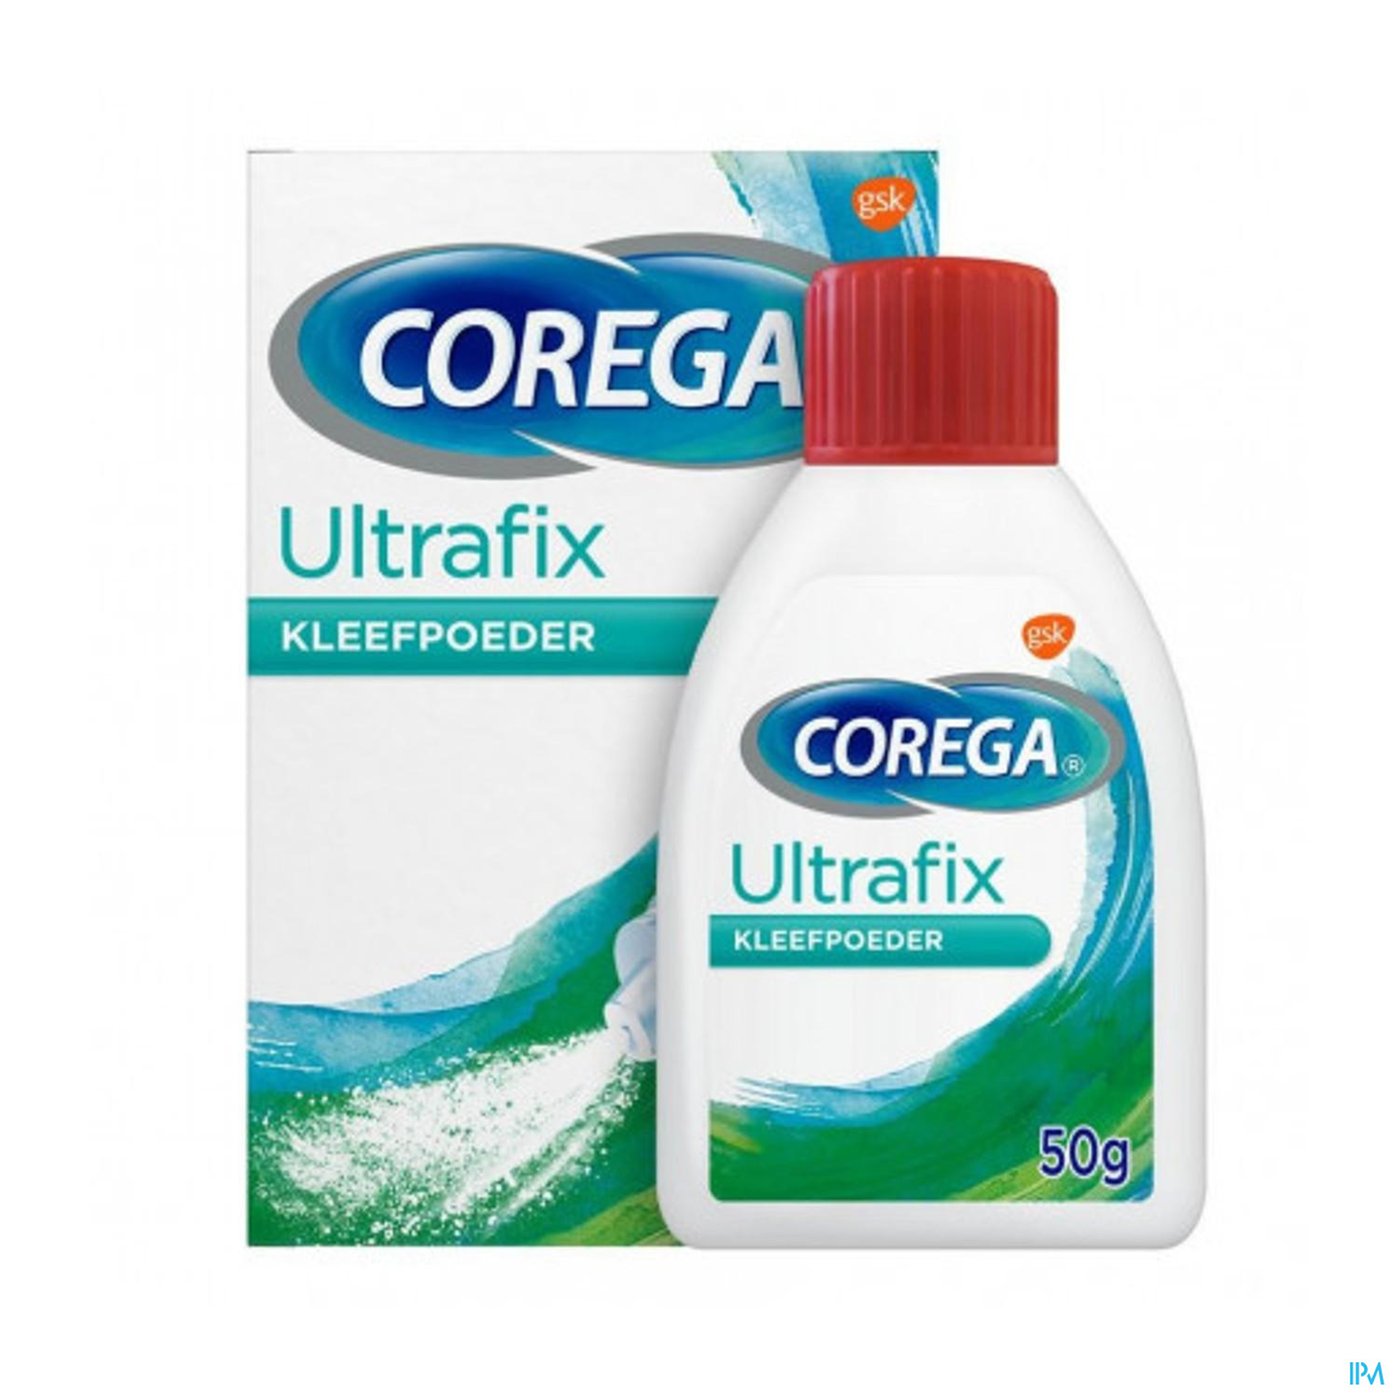 Corega Ultrafix Kleefpoeder Nf 50g packshot